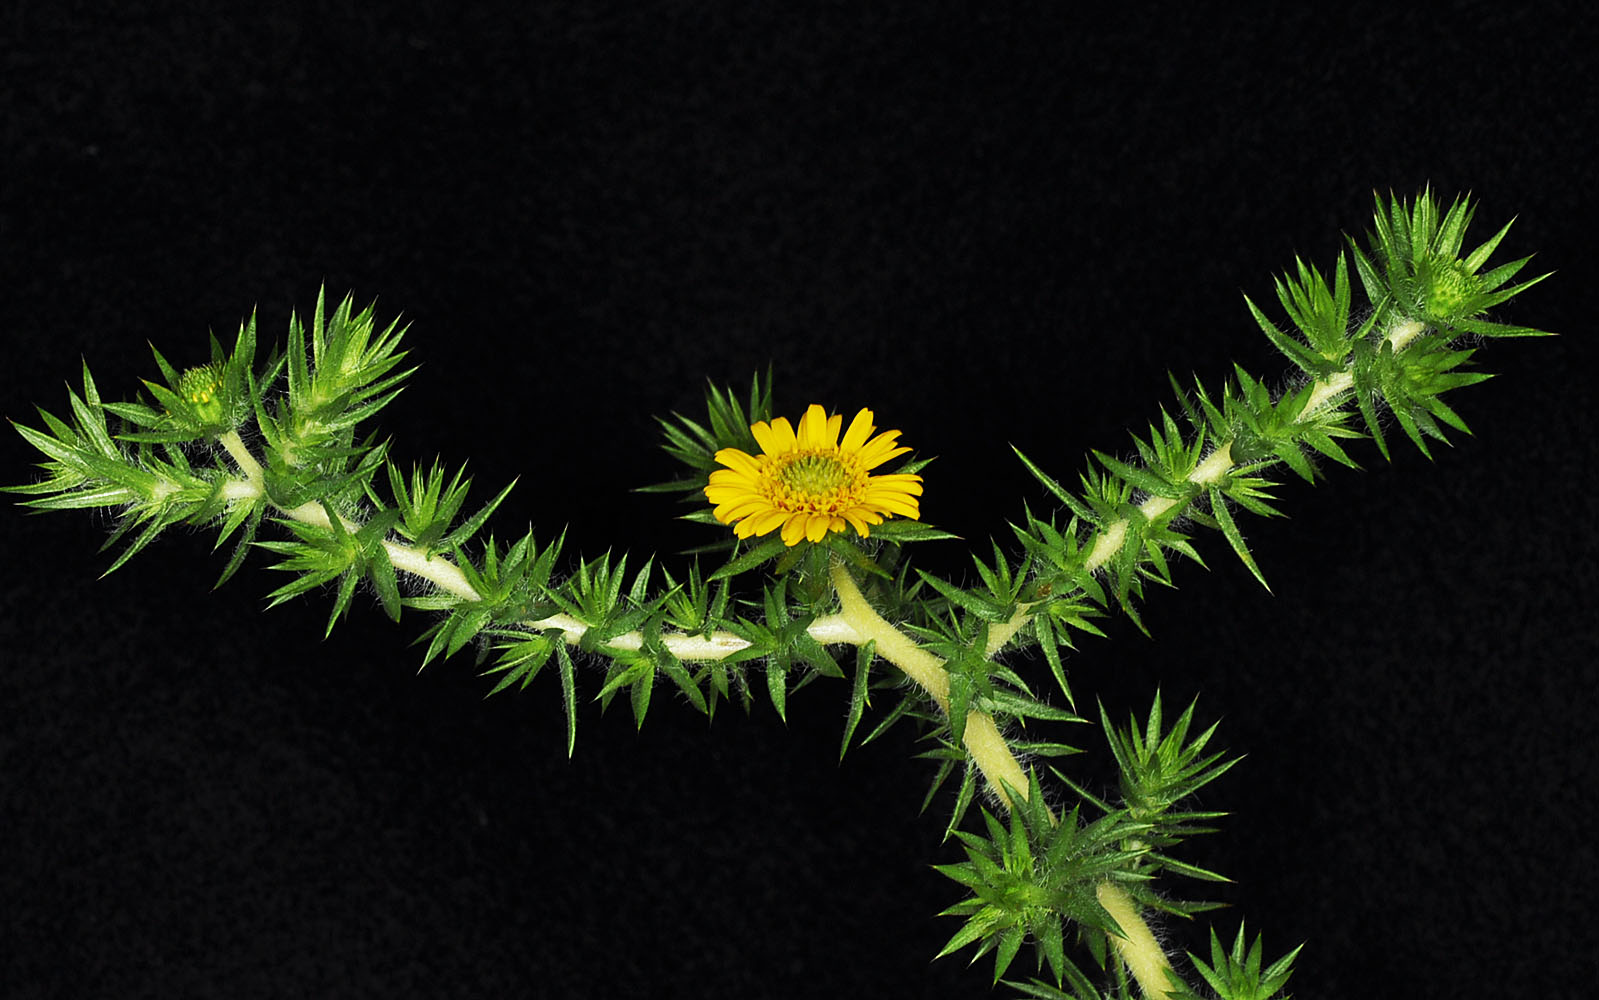 Flora of Eastern Washington Image: Centromadia pungens